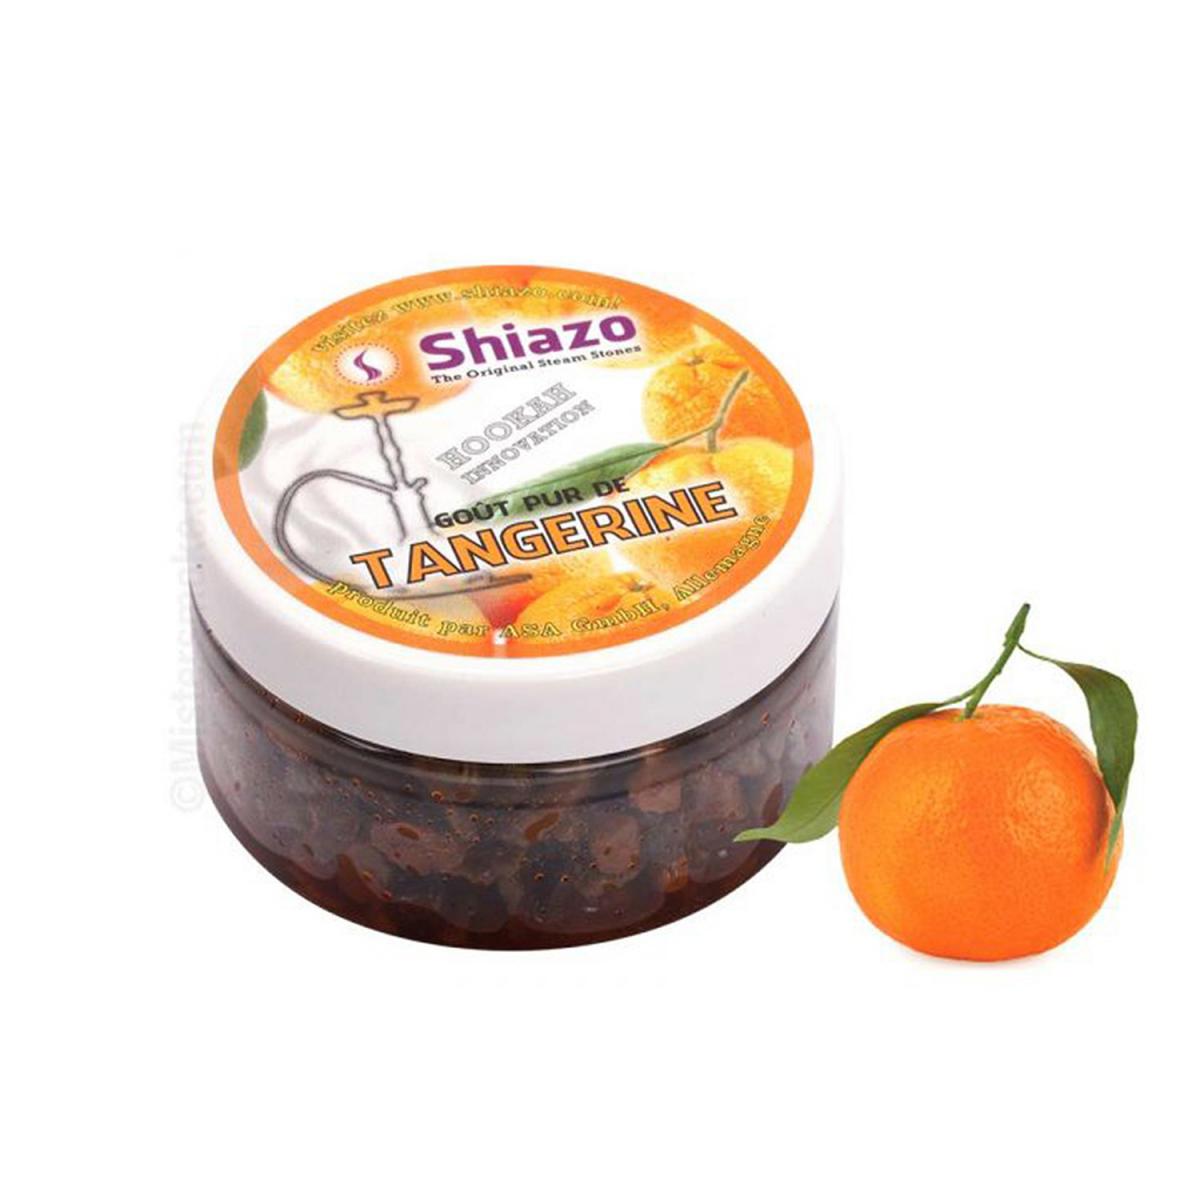 Shiazo - Shiazo - Pierre à vapeur - Tangerine - boite de 100g pour chicha /narguilé - Cendriers